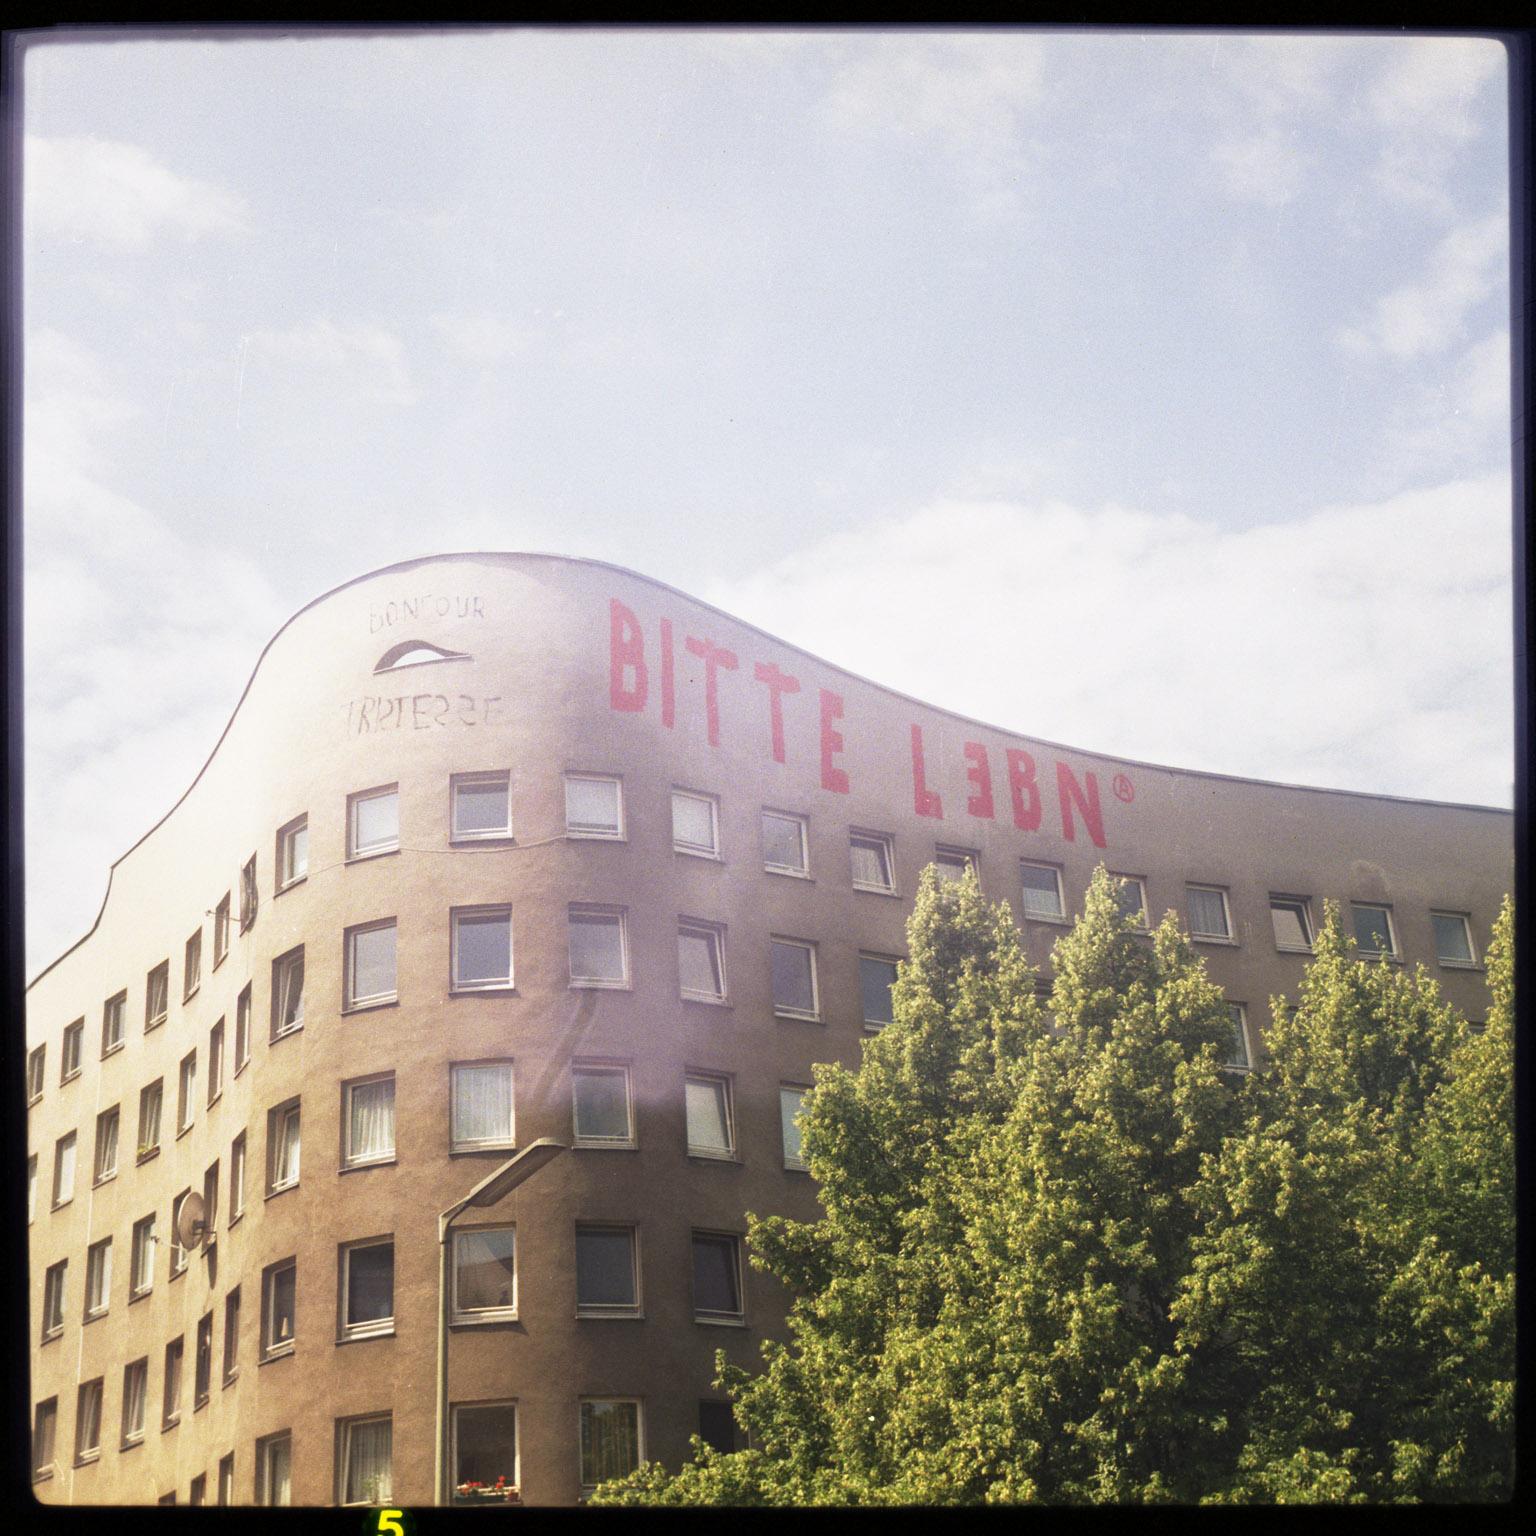 a Piece of Bitte Lebn - Pieces of Berlin - Kreuzberg, Graffiti, Streetart